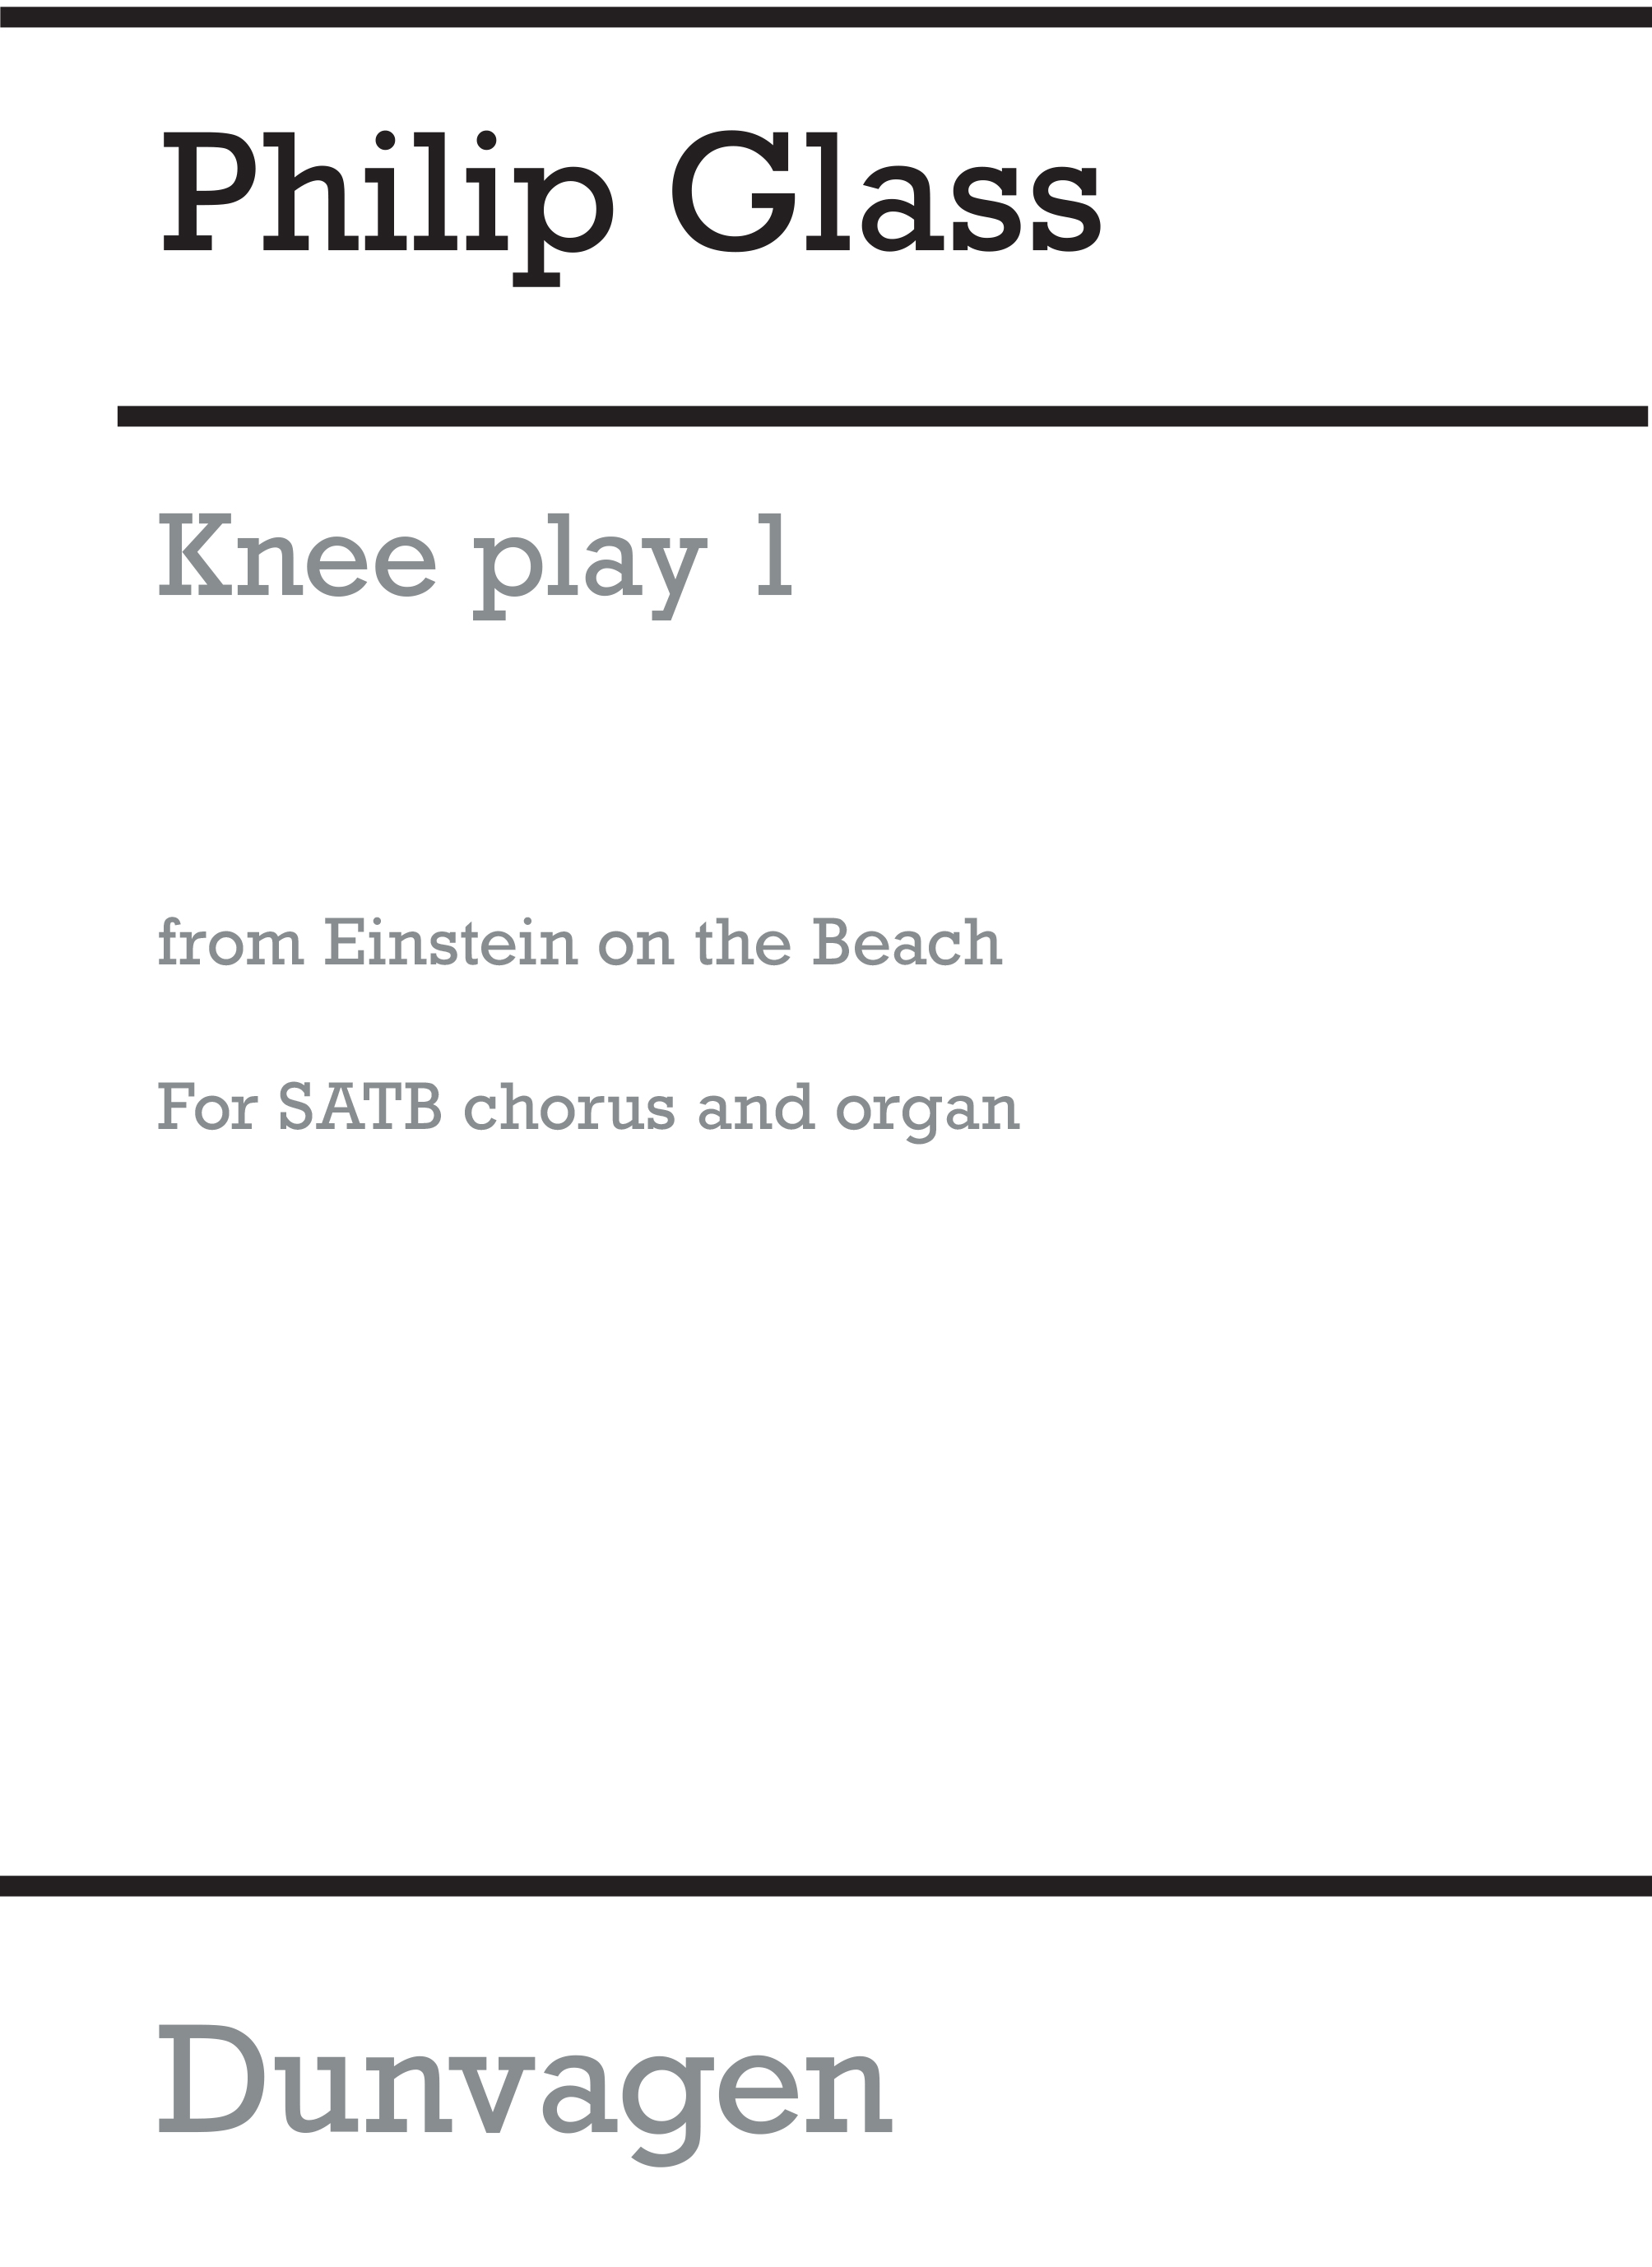 Philip Glass: Knee Play 1 (Einstein On The Beach): SATB: Vocal Work